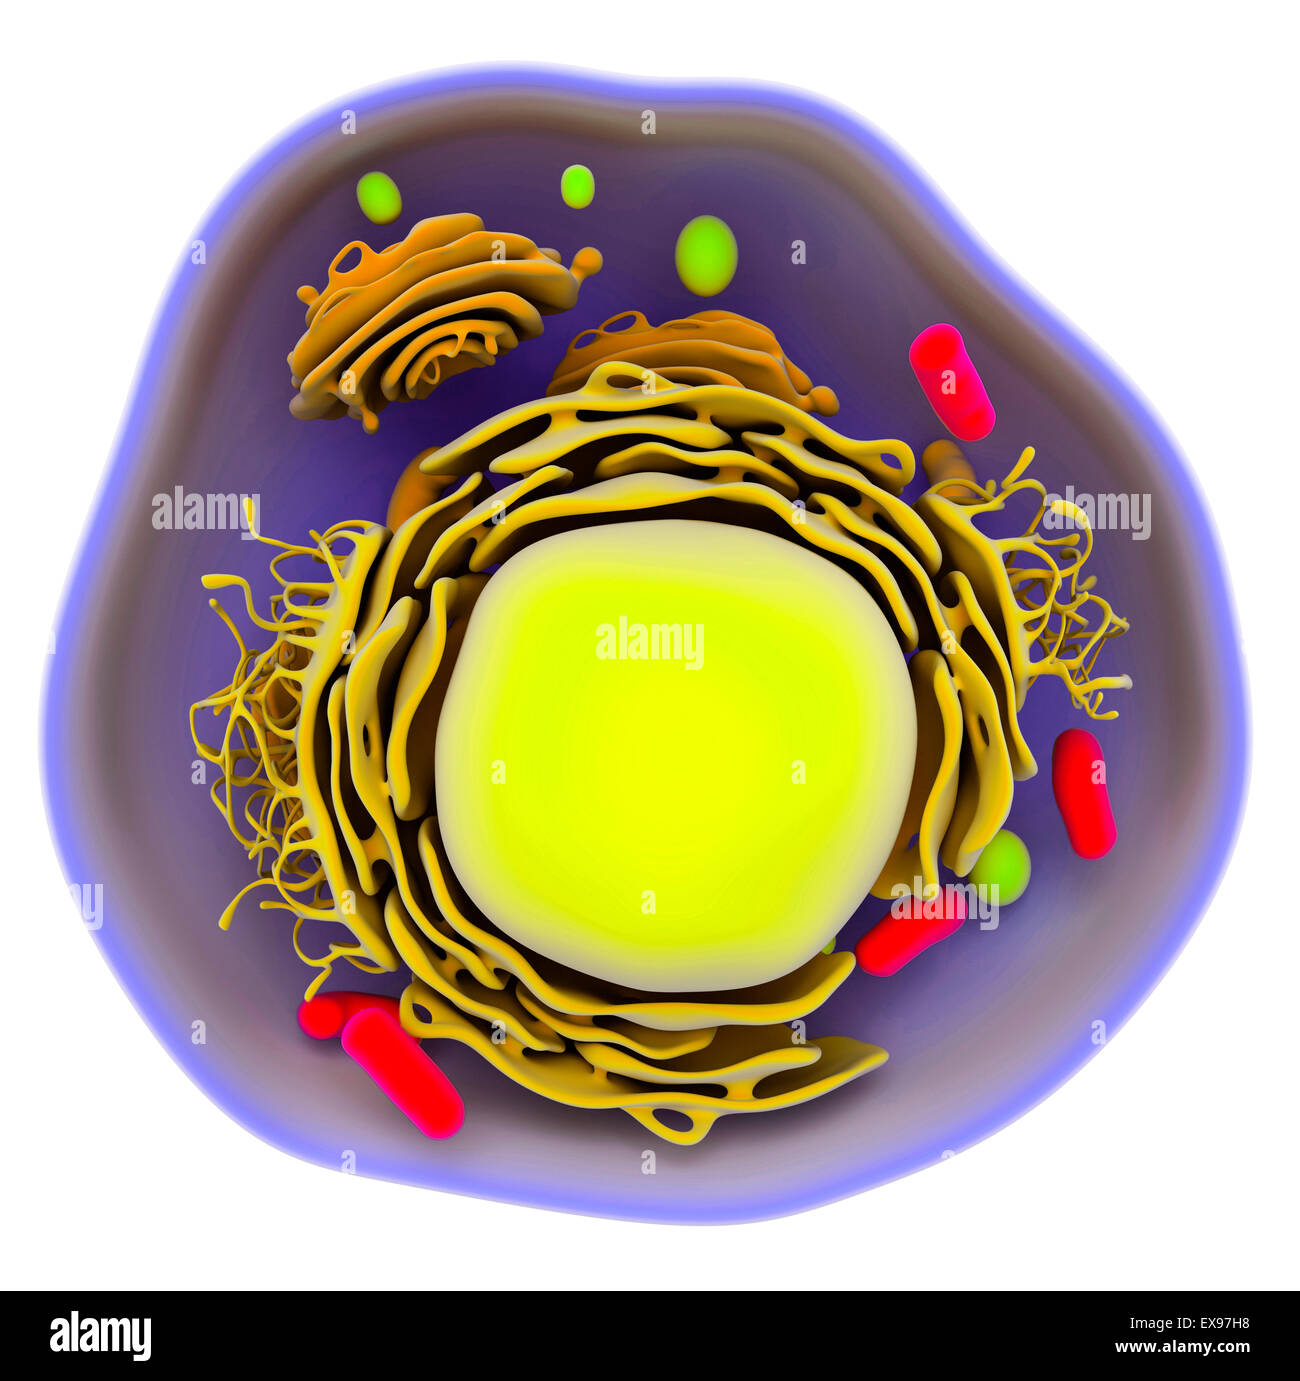 Ilustración de una célula eucariota. Foto de stock